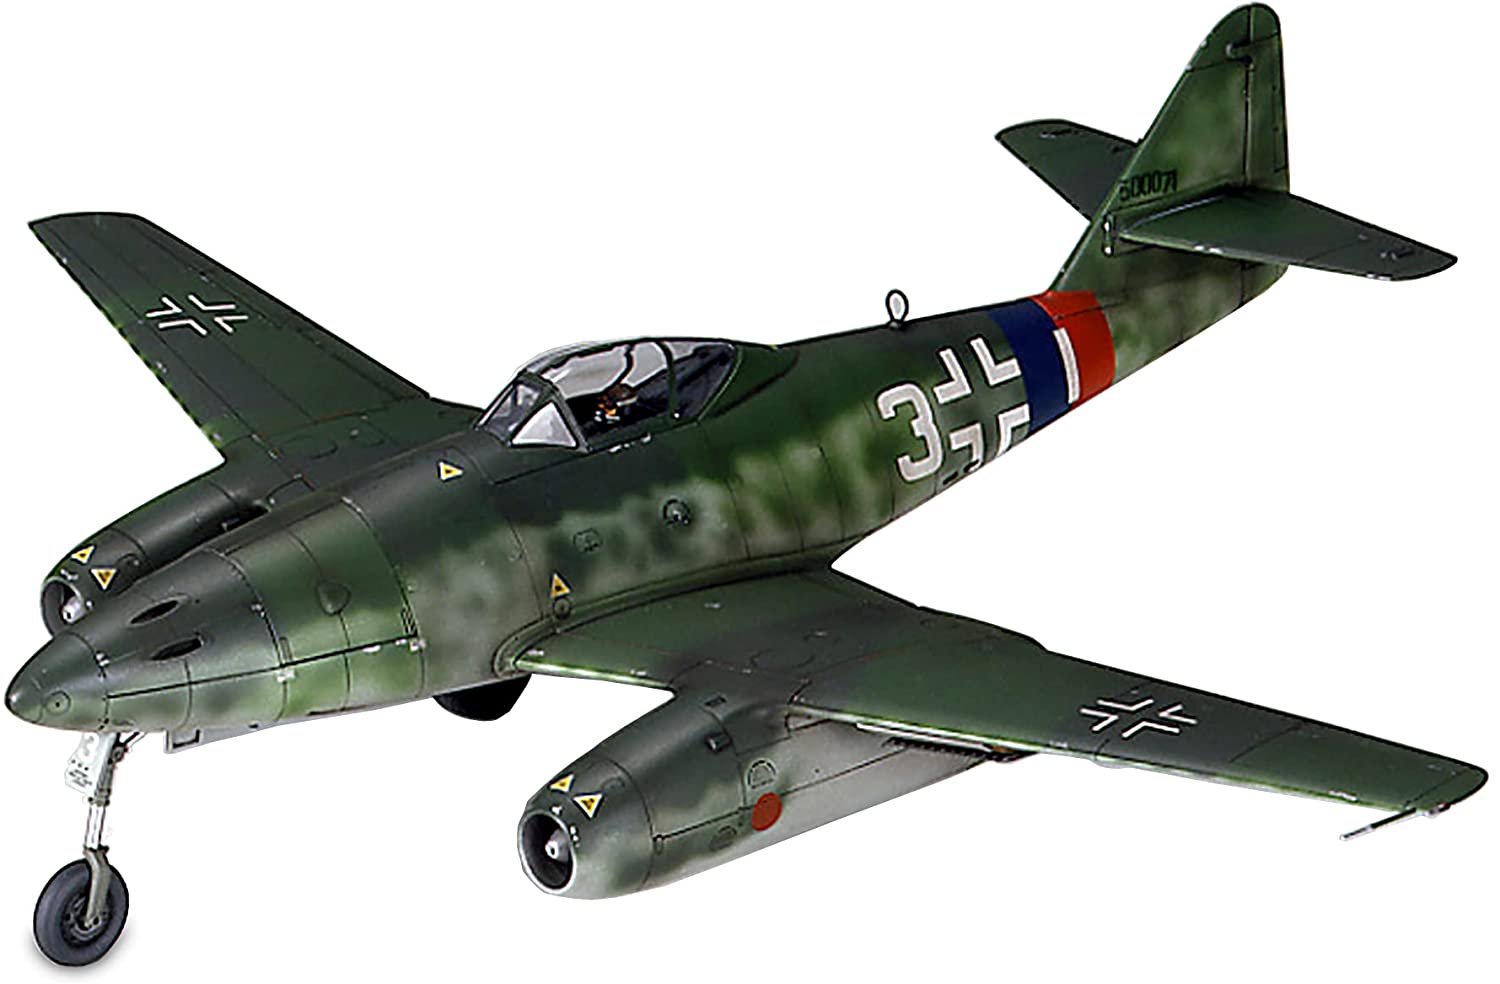 タミヤ 1/48 傑作機シリーズ No.87 ドイツ空軍 メッサーシュミット Me262 A-1a プラモデル 61087